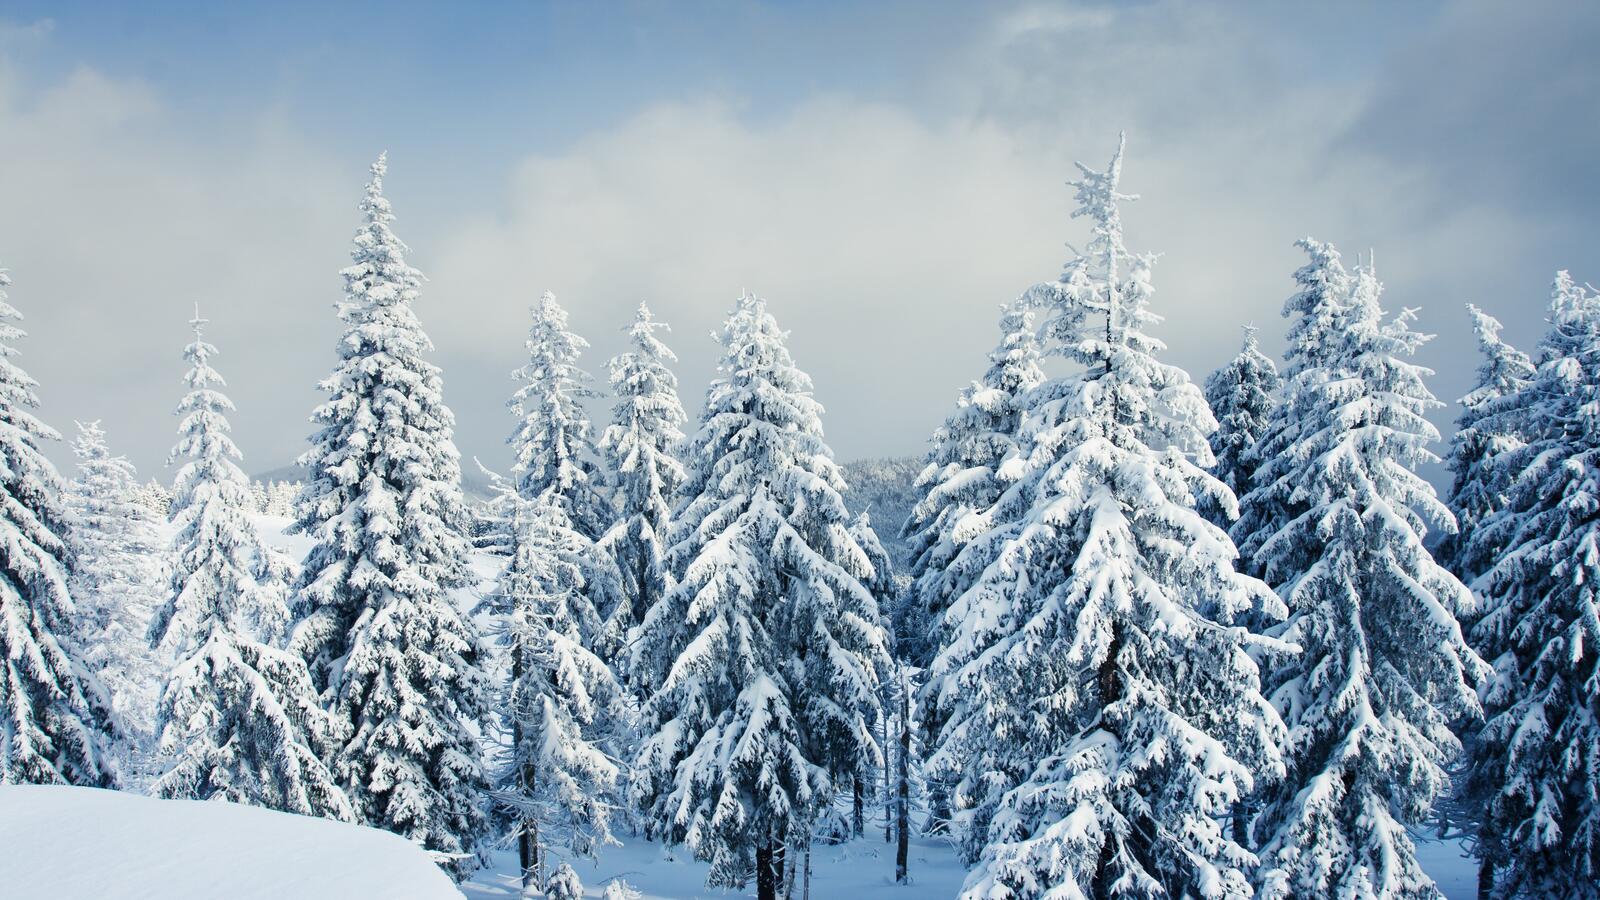 Обои елки в снегу сугробы зимний пейзаж на рабочий стол